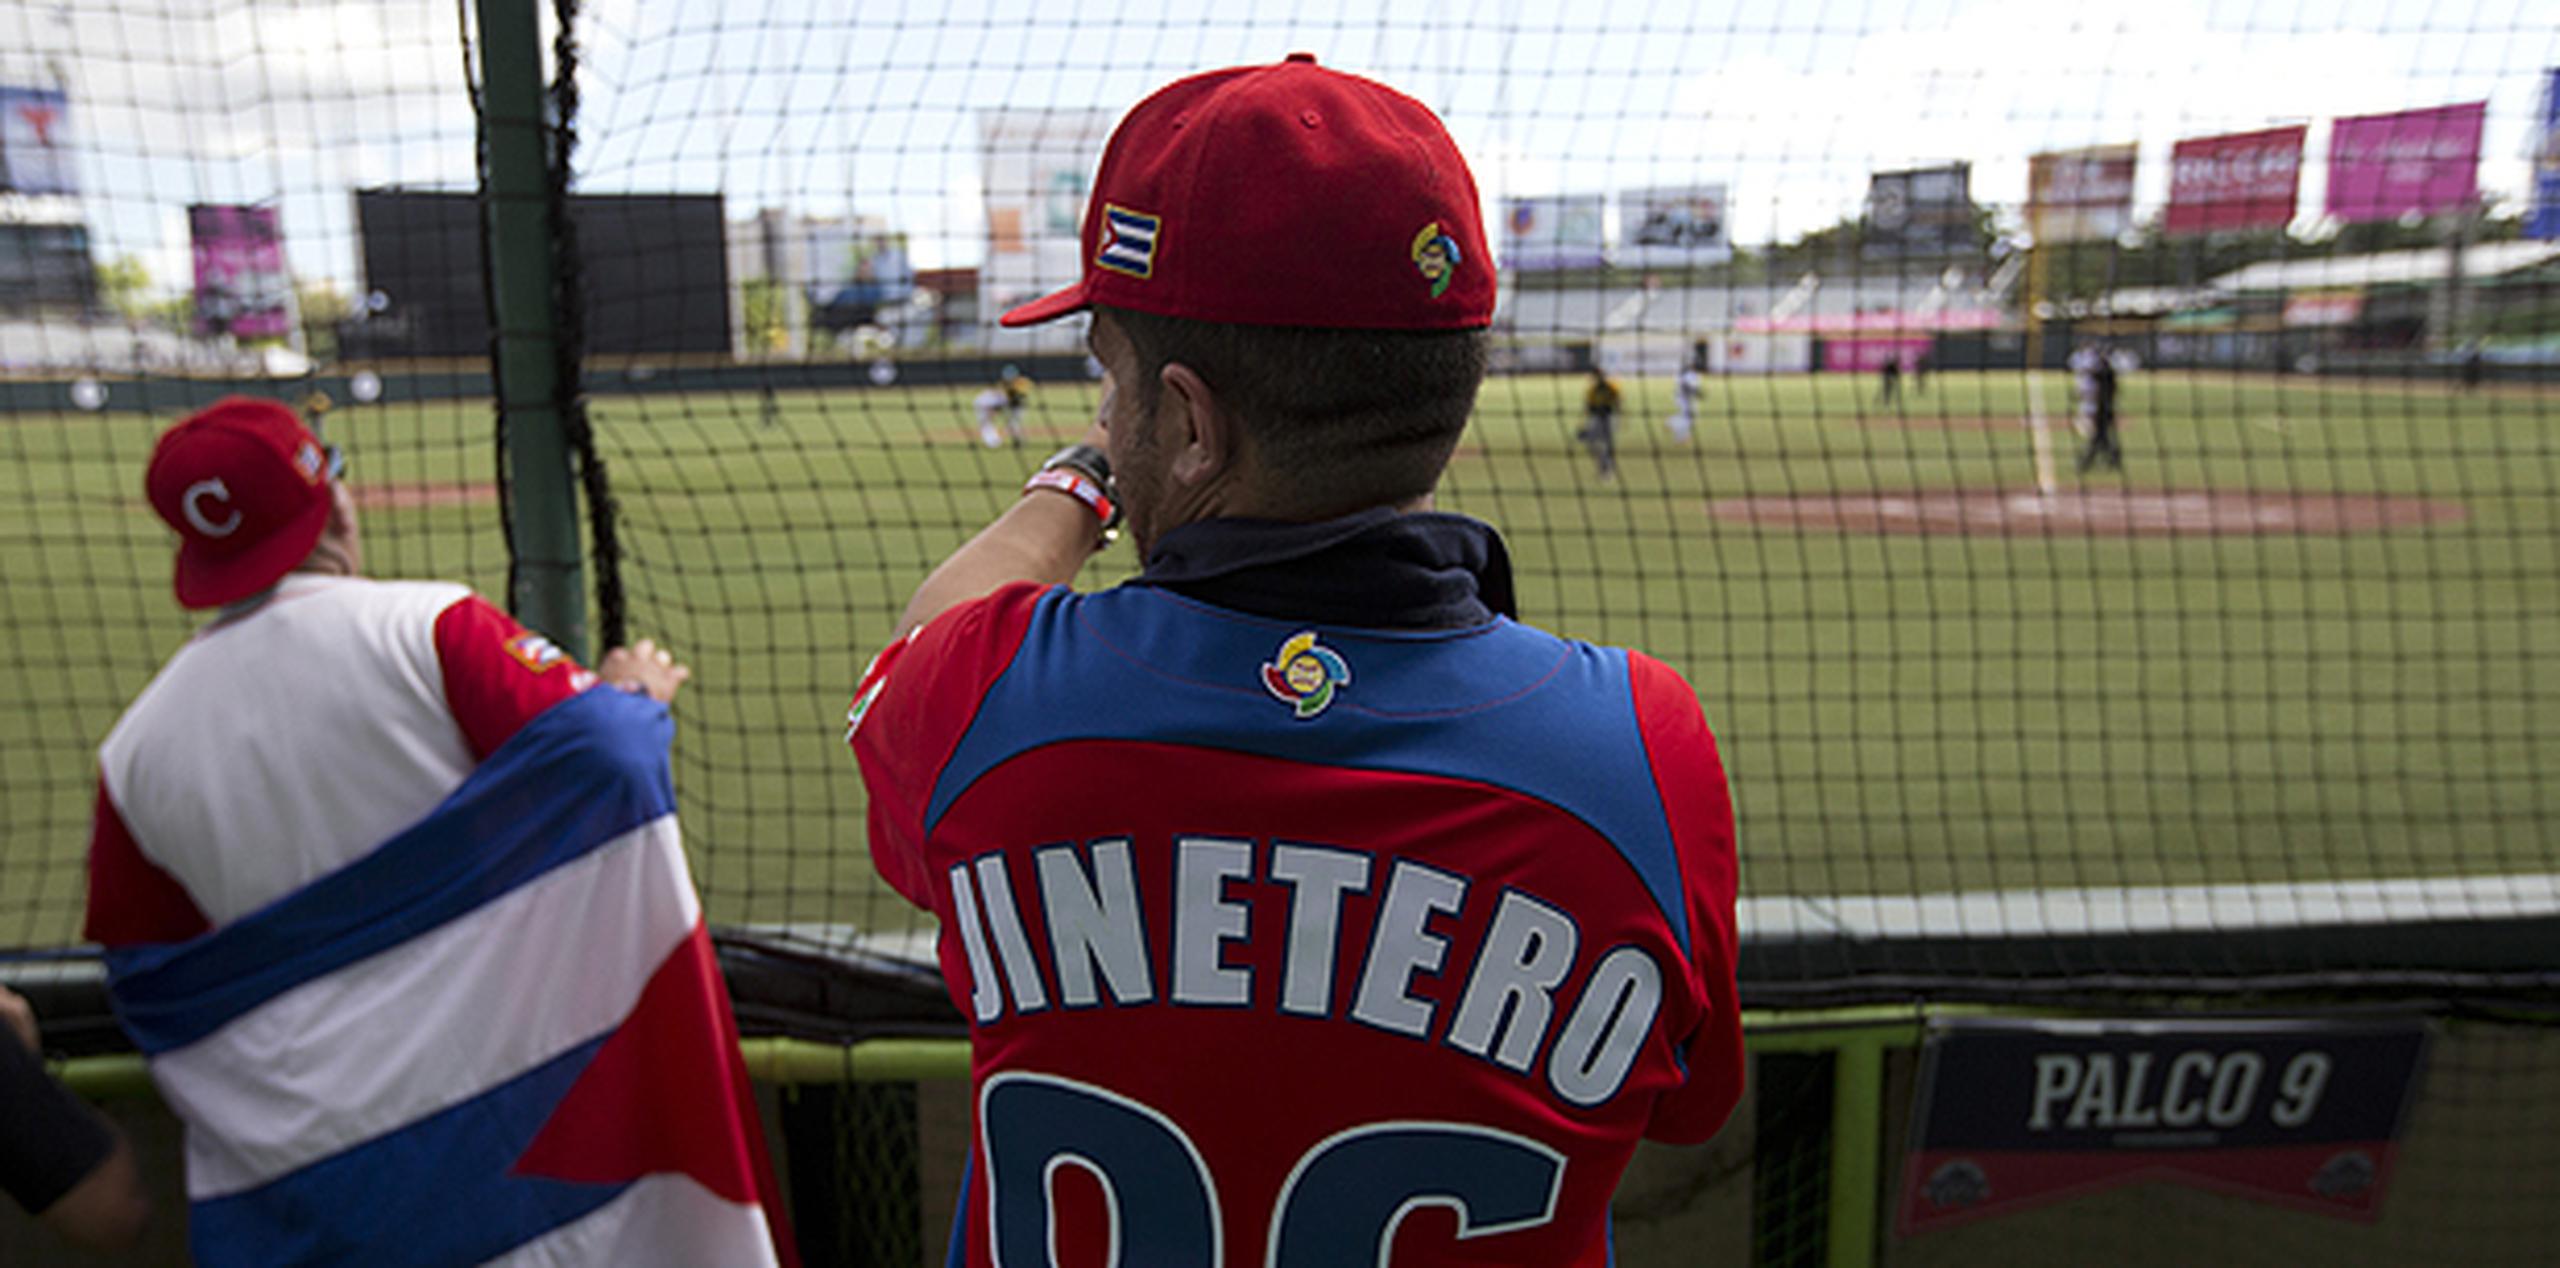 Su camisa roja con la palabra “Jinetero” y el número 96 en la espalda lo hace sobresalir de los demás. (teresa.canino@gfrmedia.com)